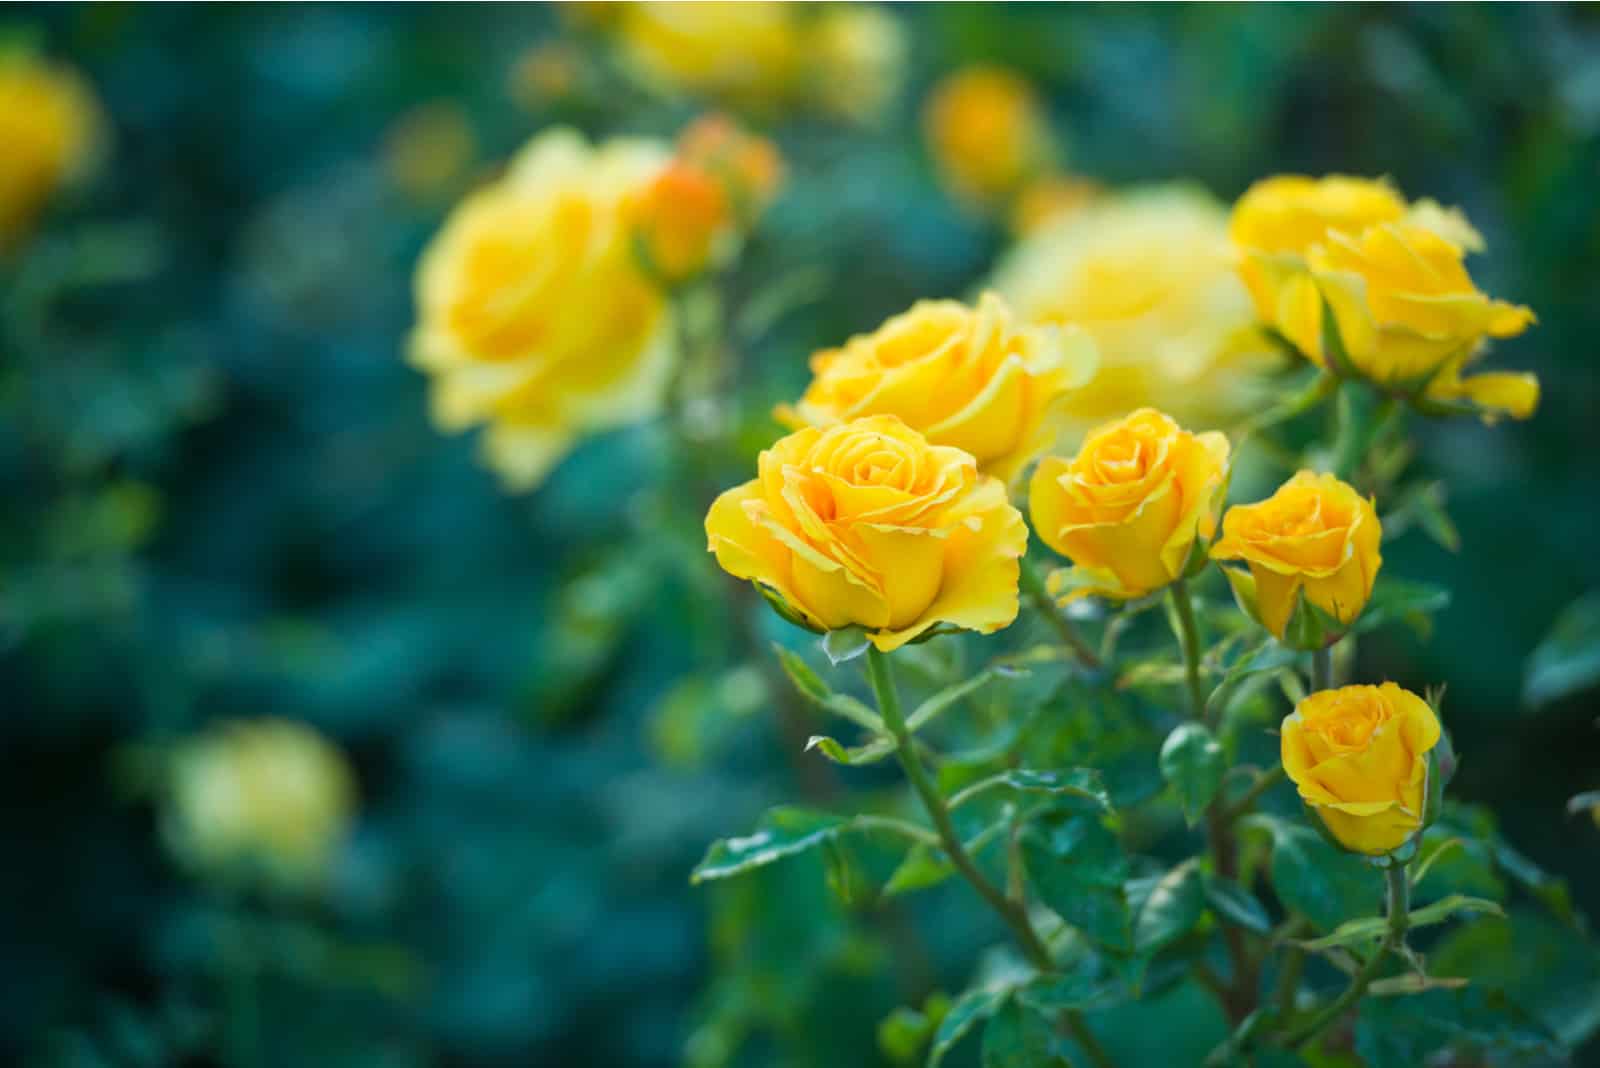 La rose jaune